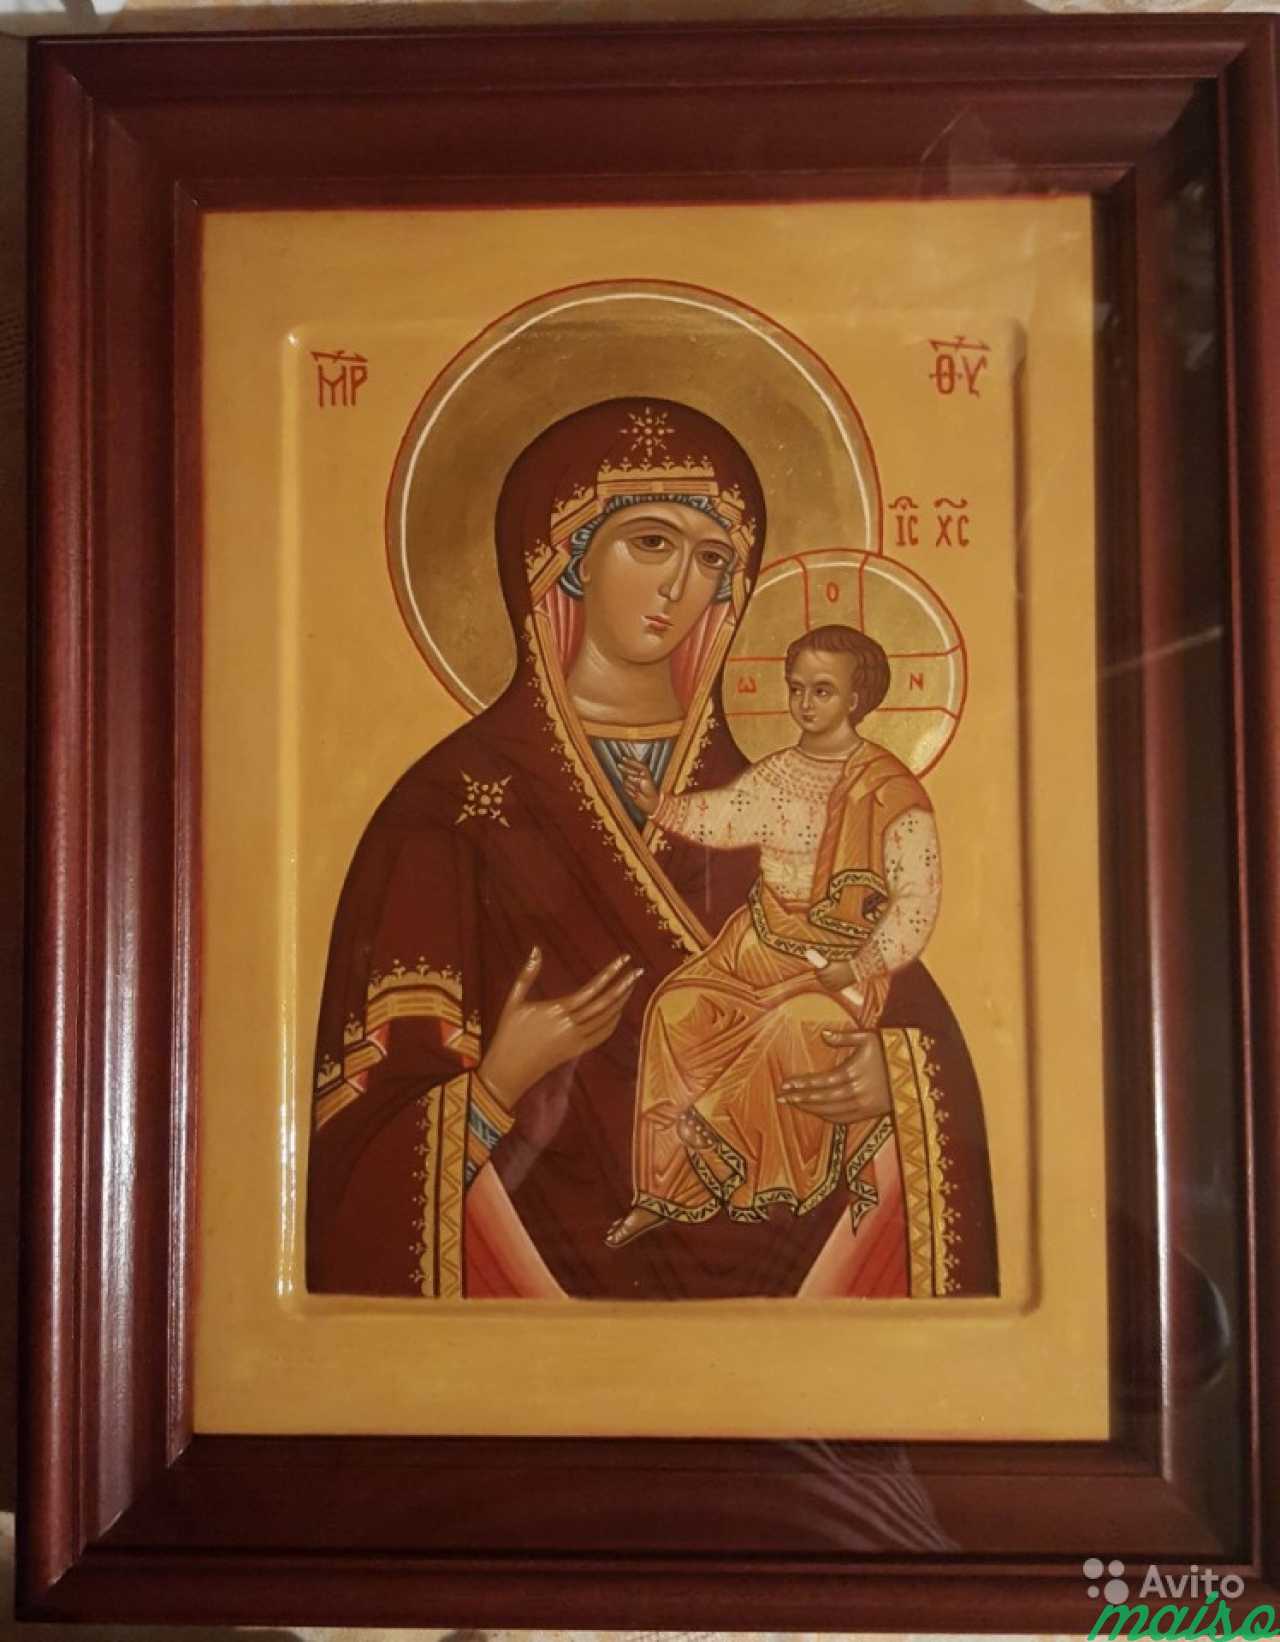 Рукописная Икона на заказ, и продажа готовых икон в Санкт-Петербурге. Фото 8